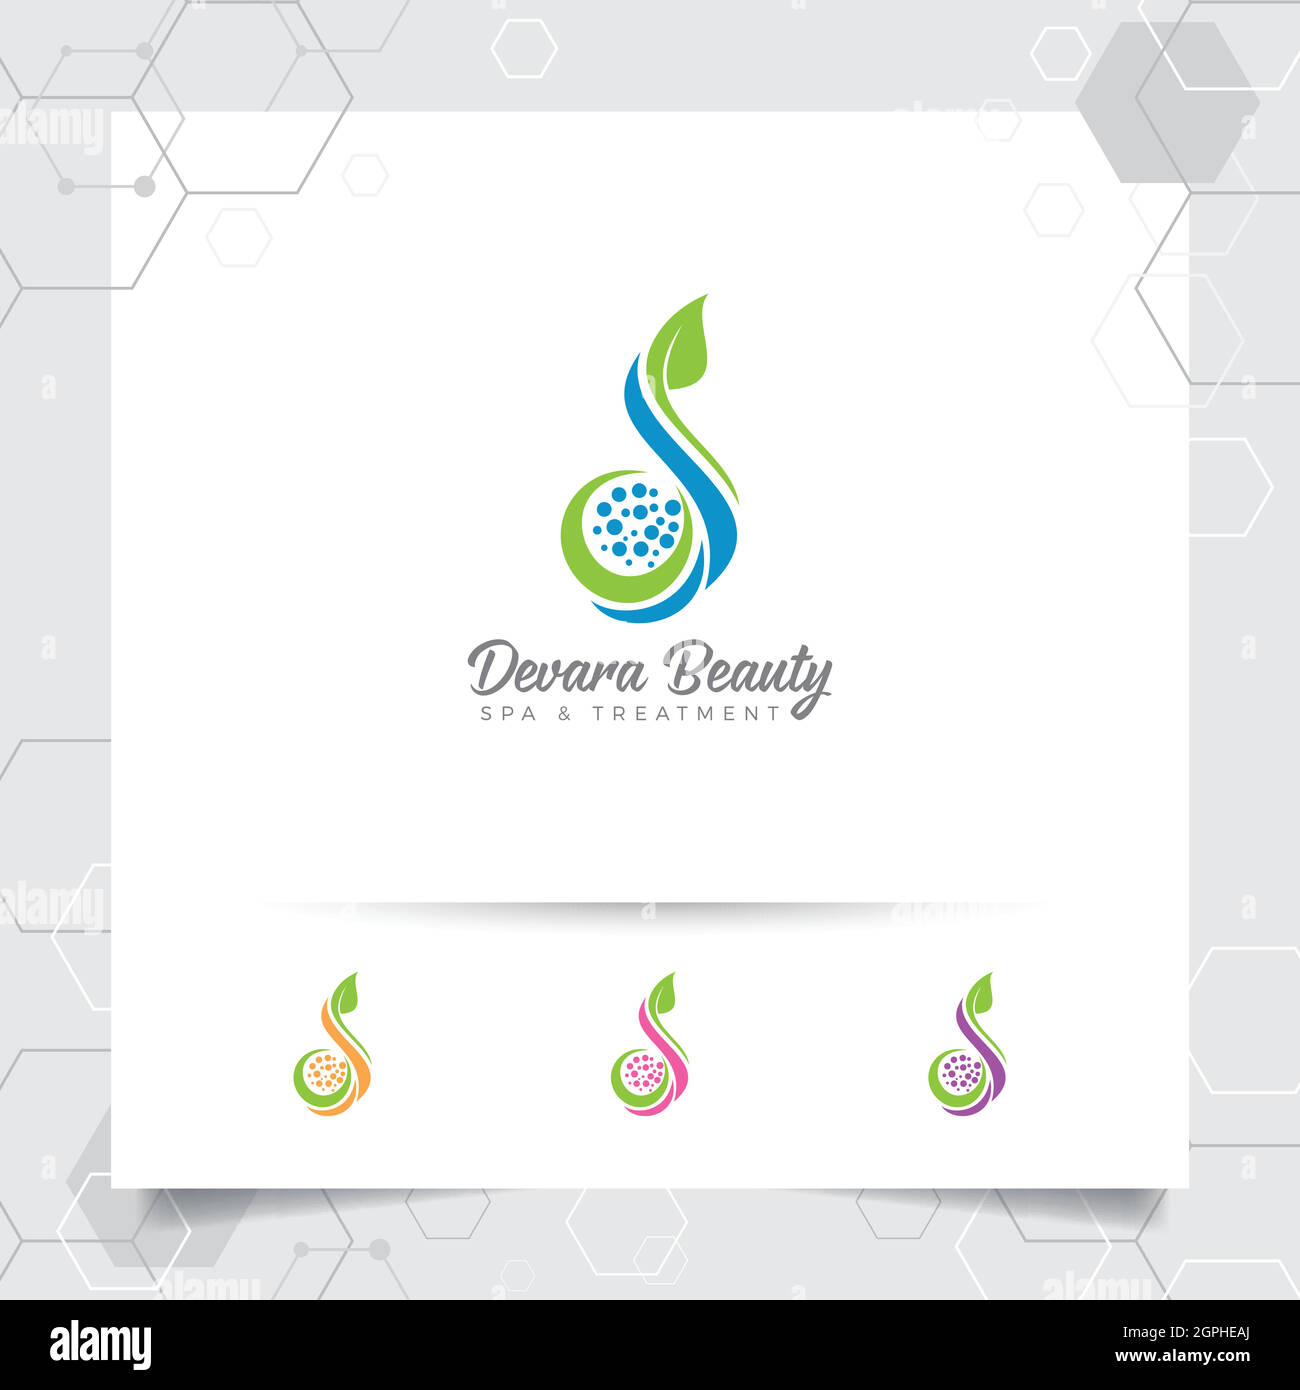 Spa Beauty Logo Vektor-Design mit Konzept der grünen Natur. Spa- und Behandlungslogo für Schönheitssalon-Klinik. Stock Vektor